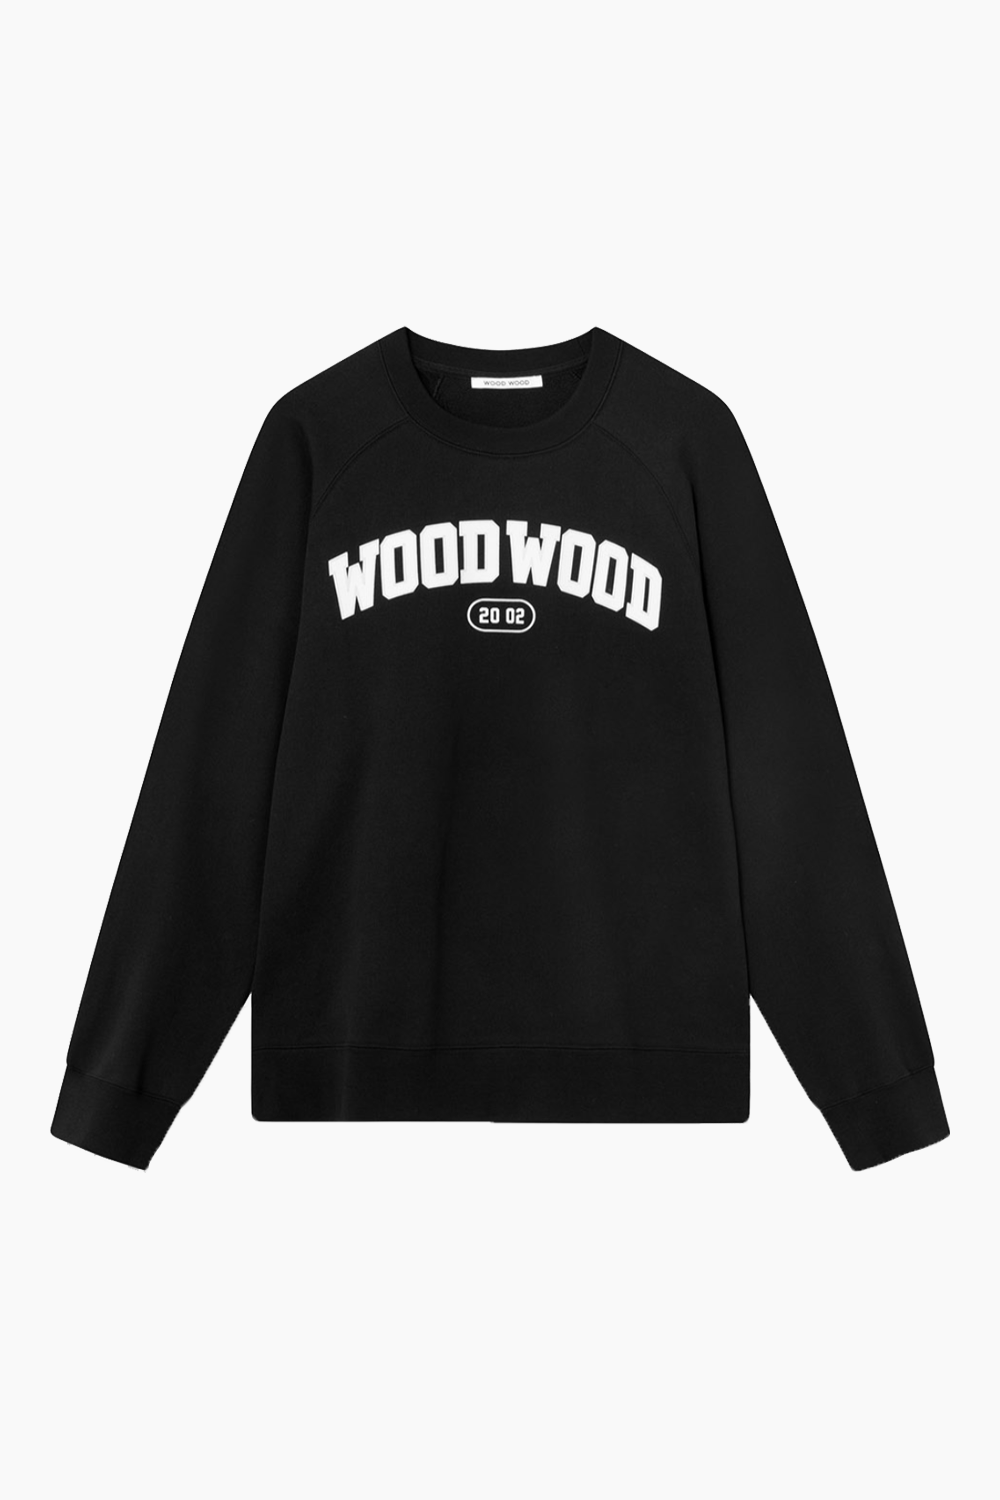 Hope IVY Sweatshirt - Black - Wood Wood